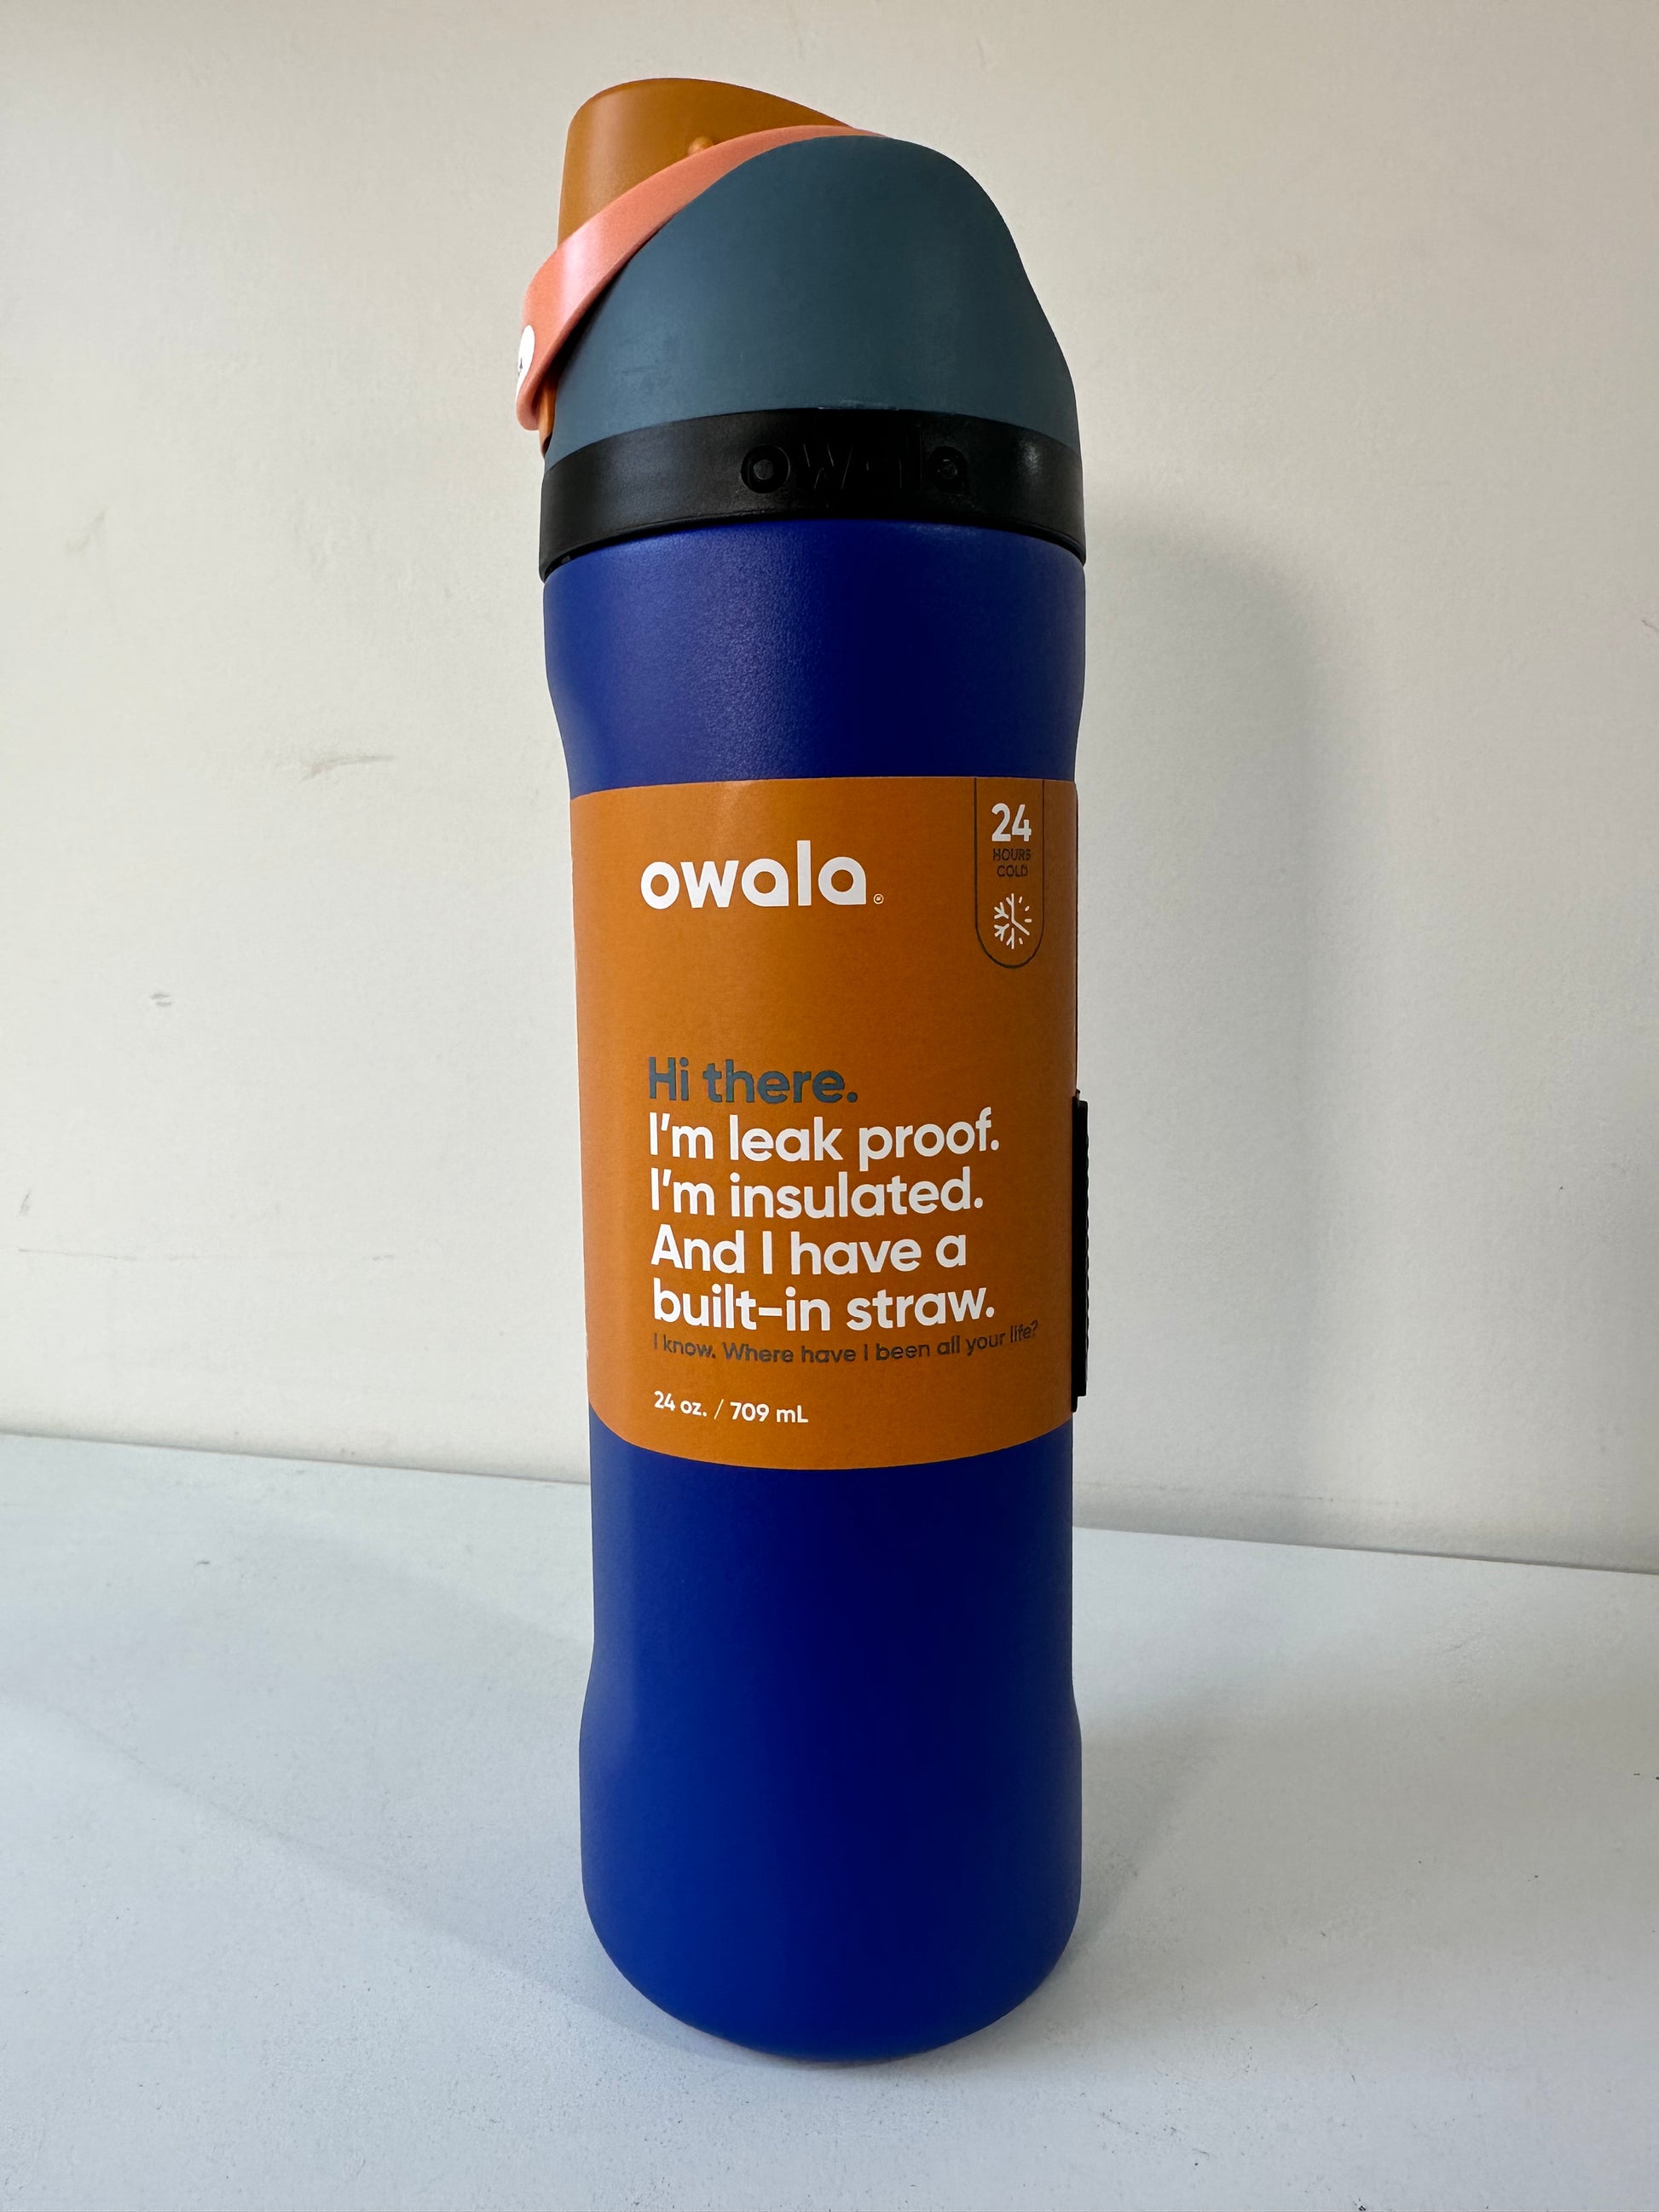 Personalized Owala 32 Oz Freesip Water Bottle Leak Proof Built in